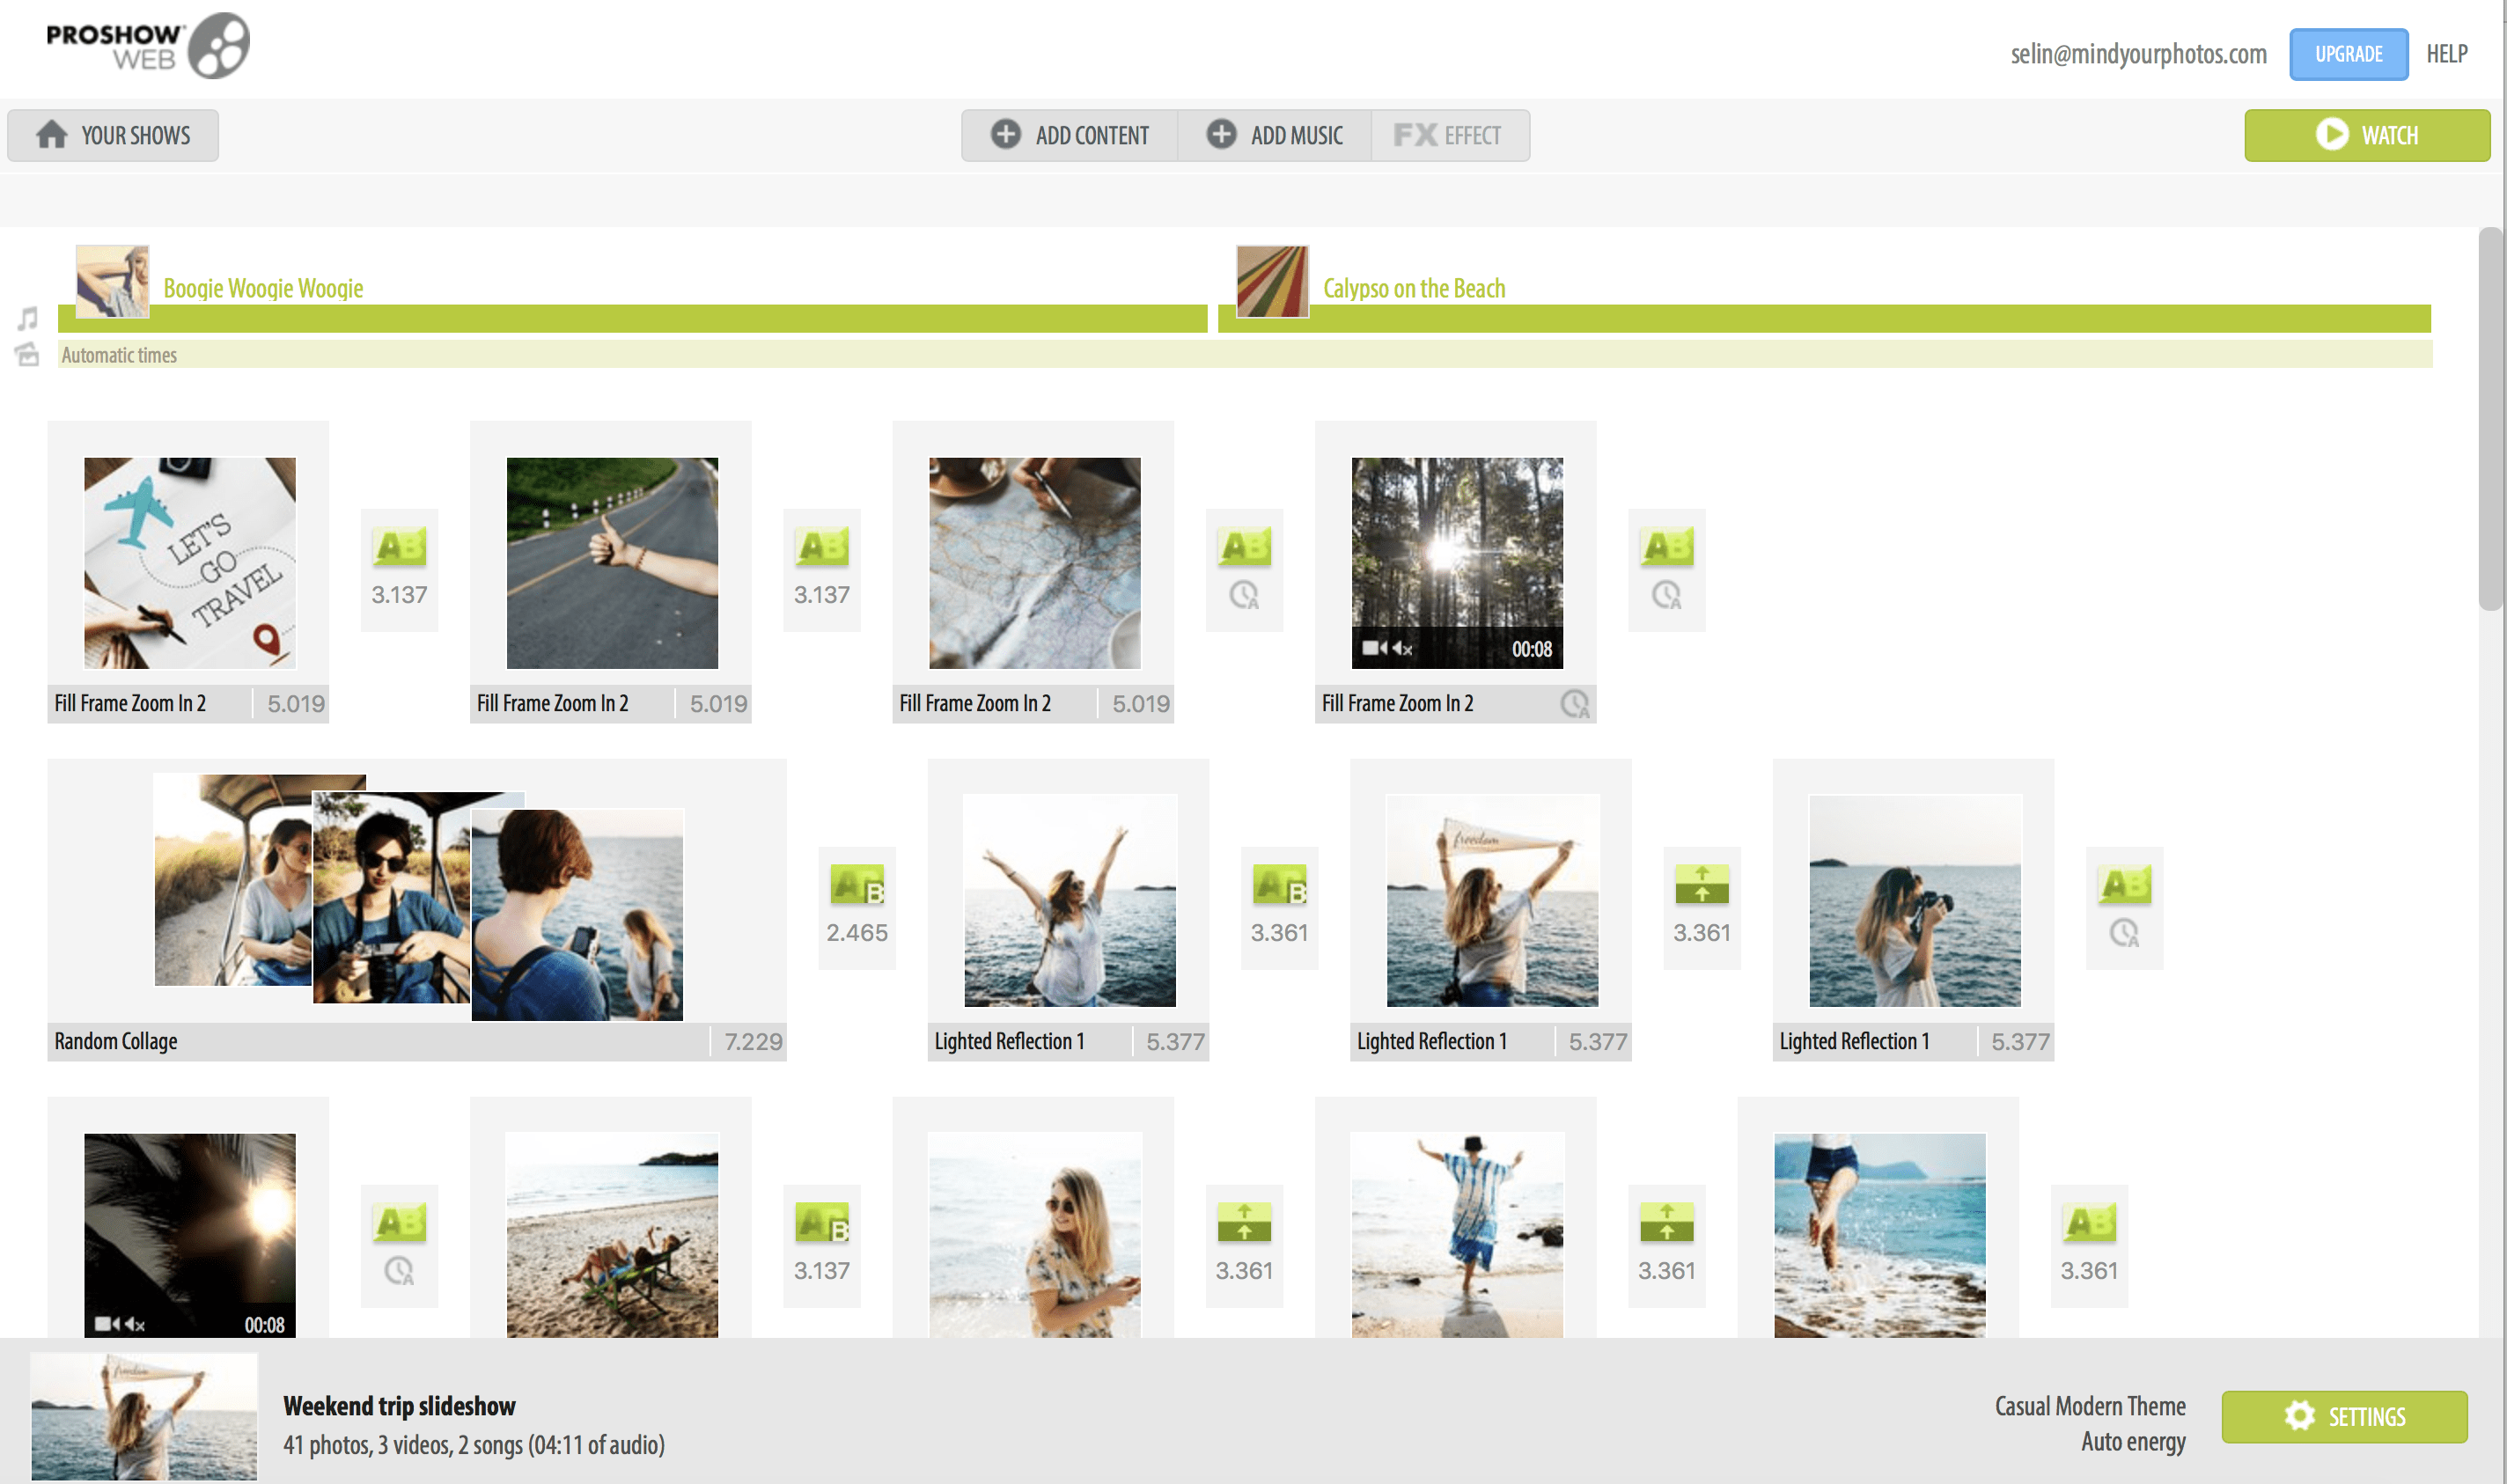 ProShow Webでプロのような写真やビデオのスライドショーを作成する方法|OrganizingPhotos.netすでにスライドショーを作成している場合でも、タイムラインに移動して再度編集することができます。